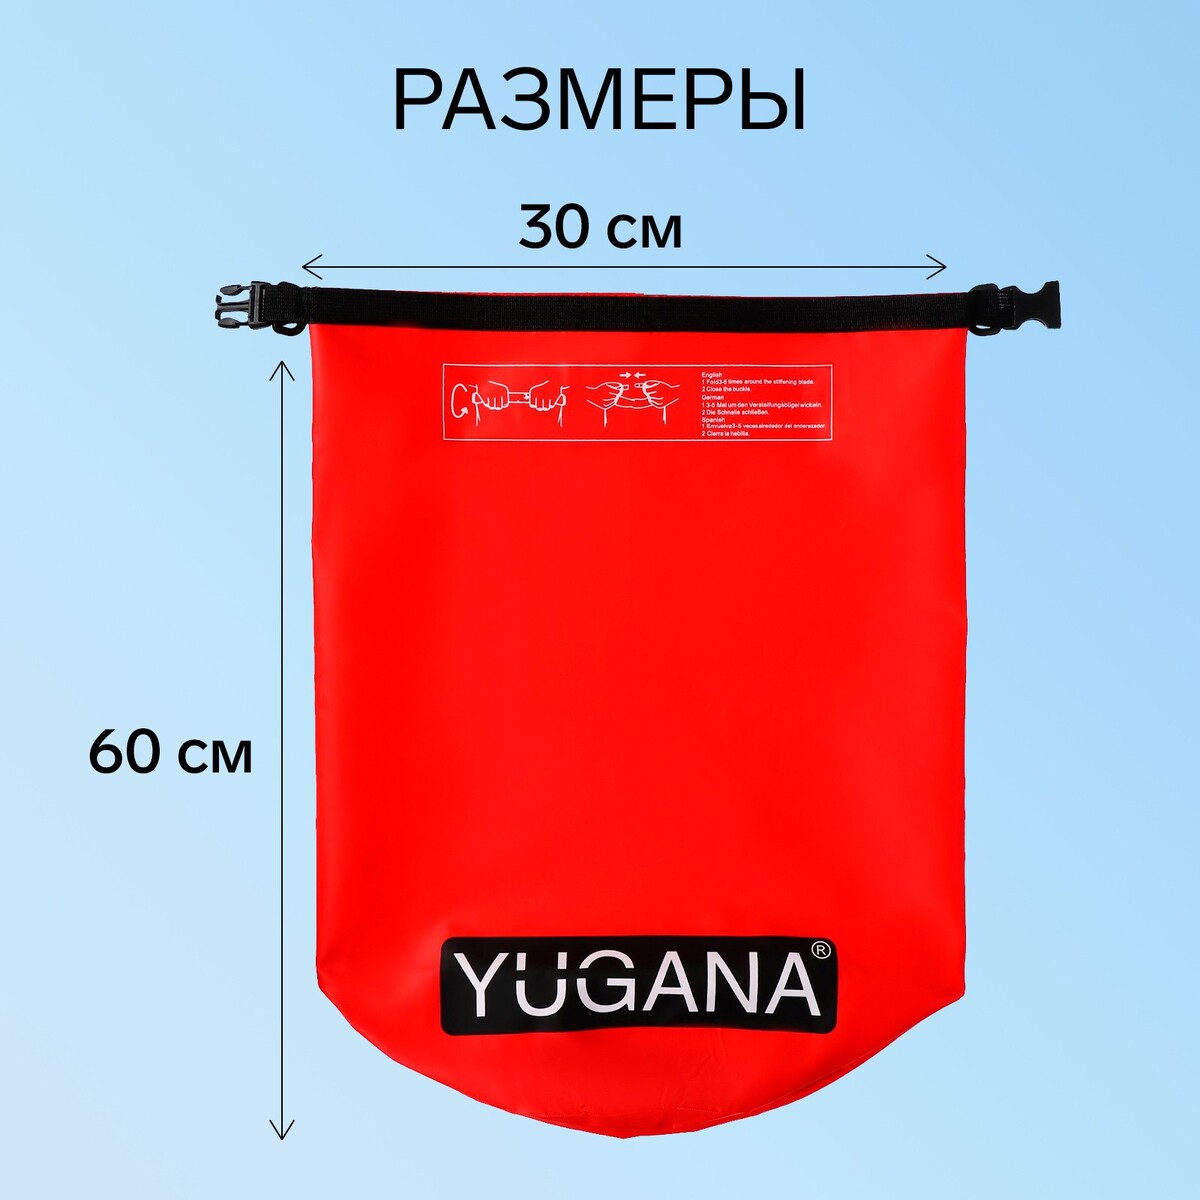 фото Гермомешок yugana, пвх, водонепроницаемый 40 литров, один ремень, красный